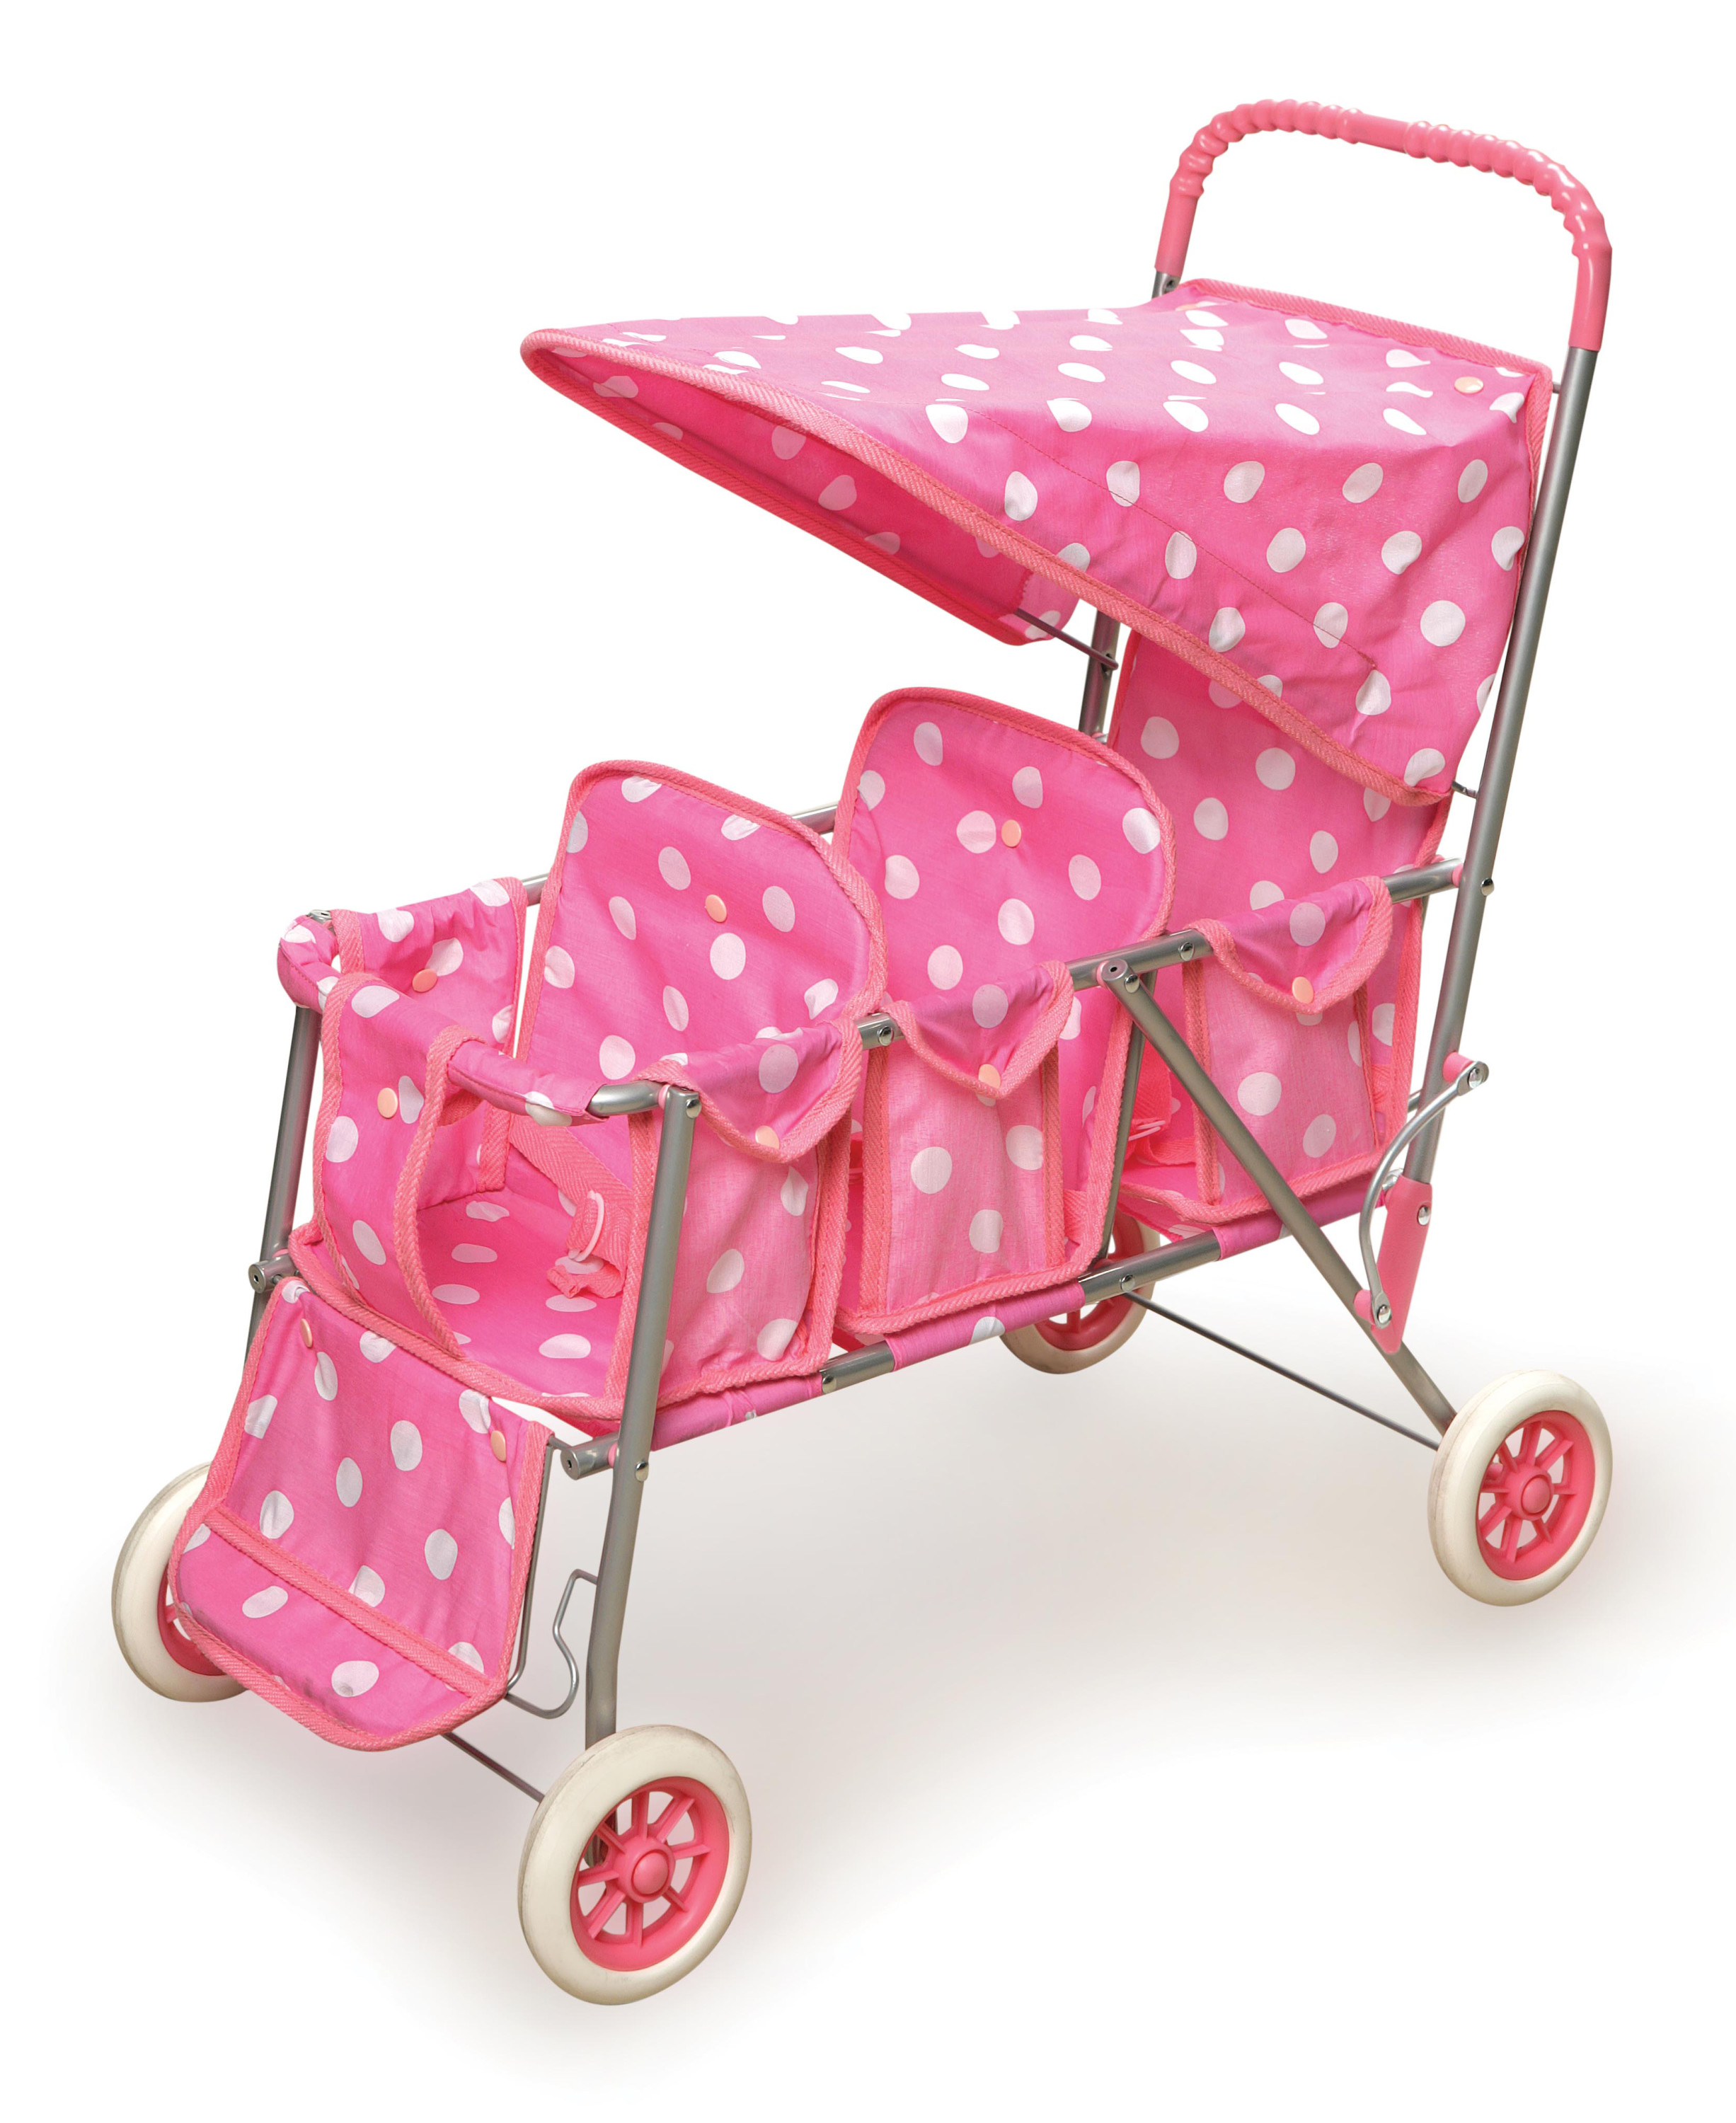 Badger Basket Folding Triple Doll Stroller - Pink/Polka Dots - image 1 of 7